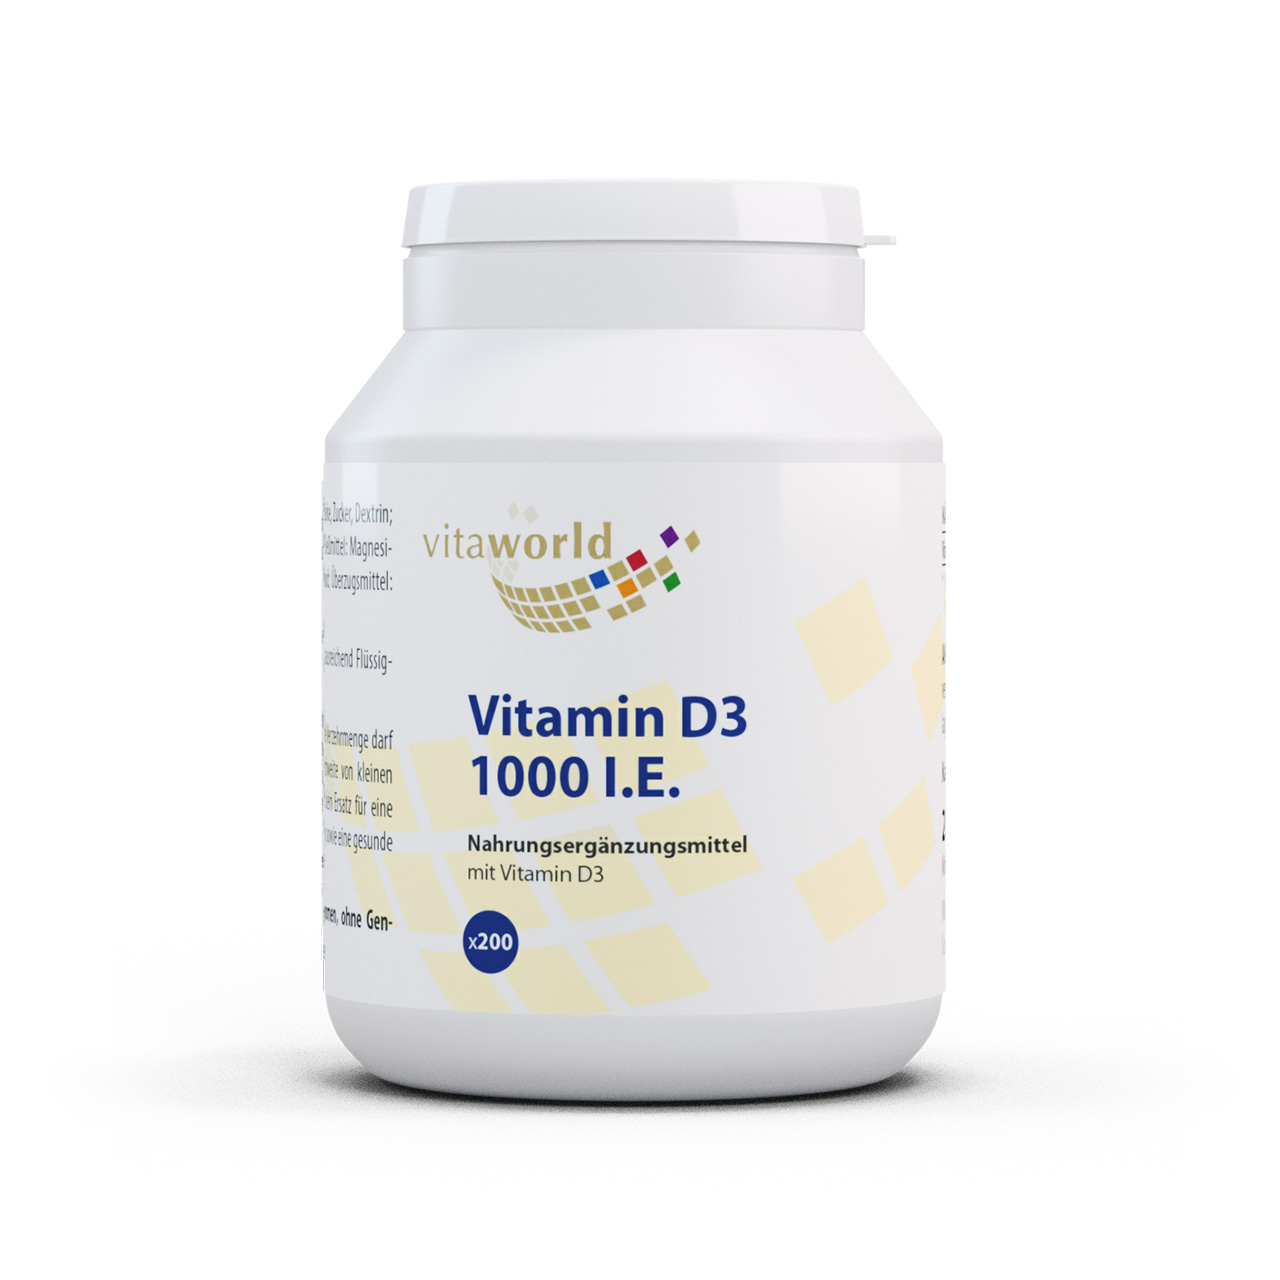 Vita World Vitamin D3 1000 I.E. | 200 Tabletten